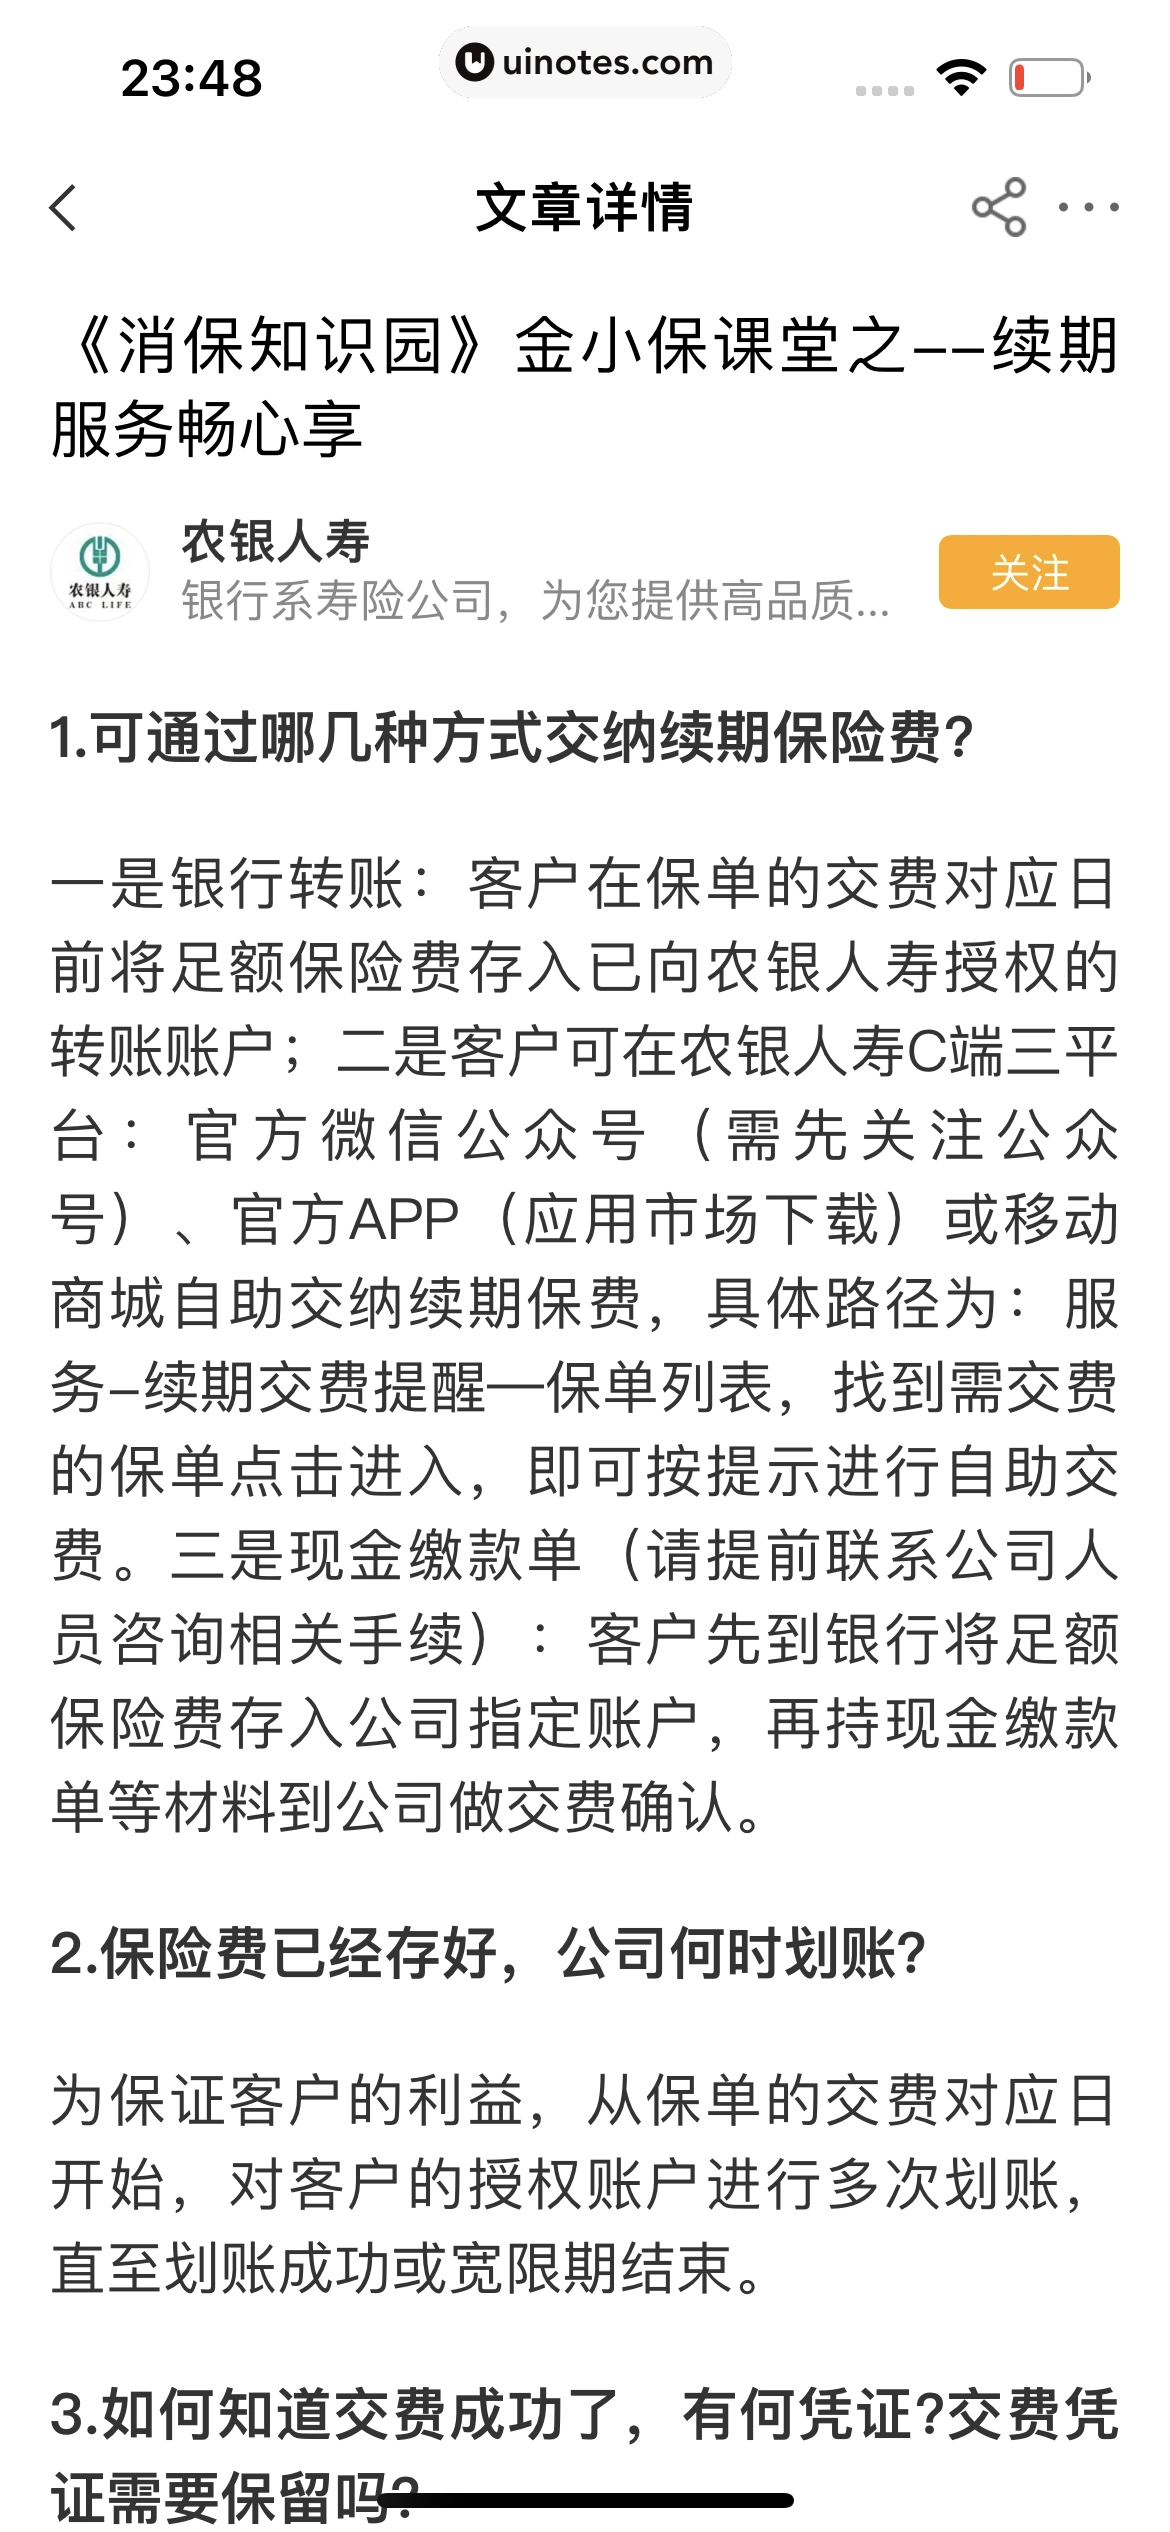 中国农业银行 App 截图 182 - UI Notes